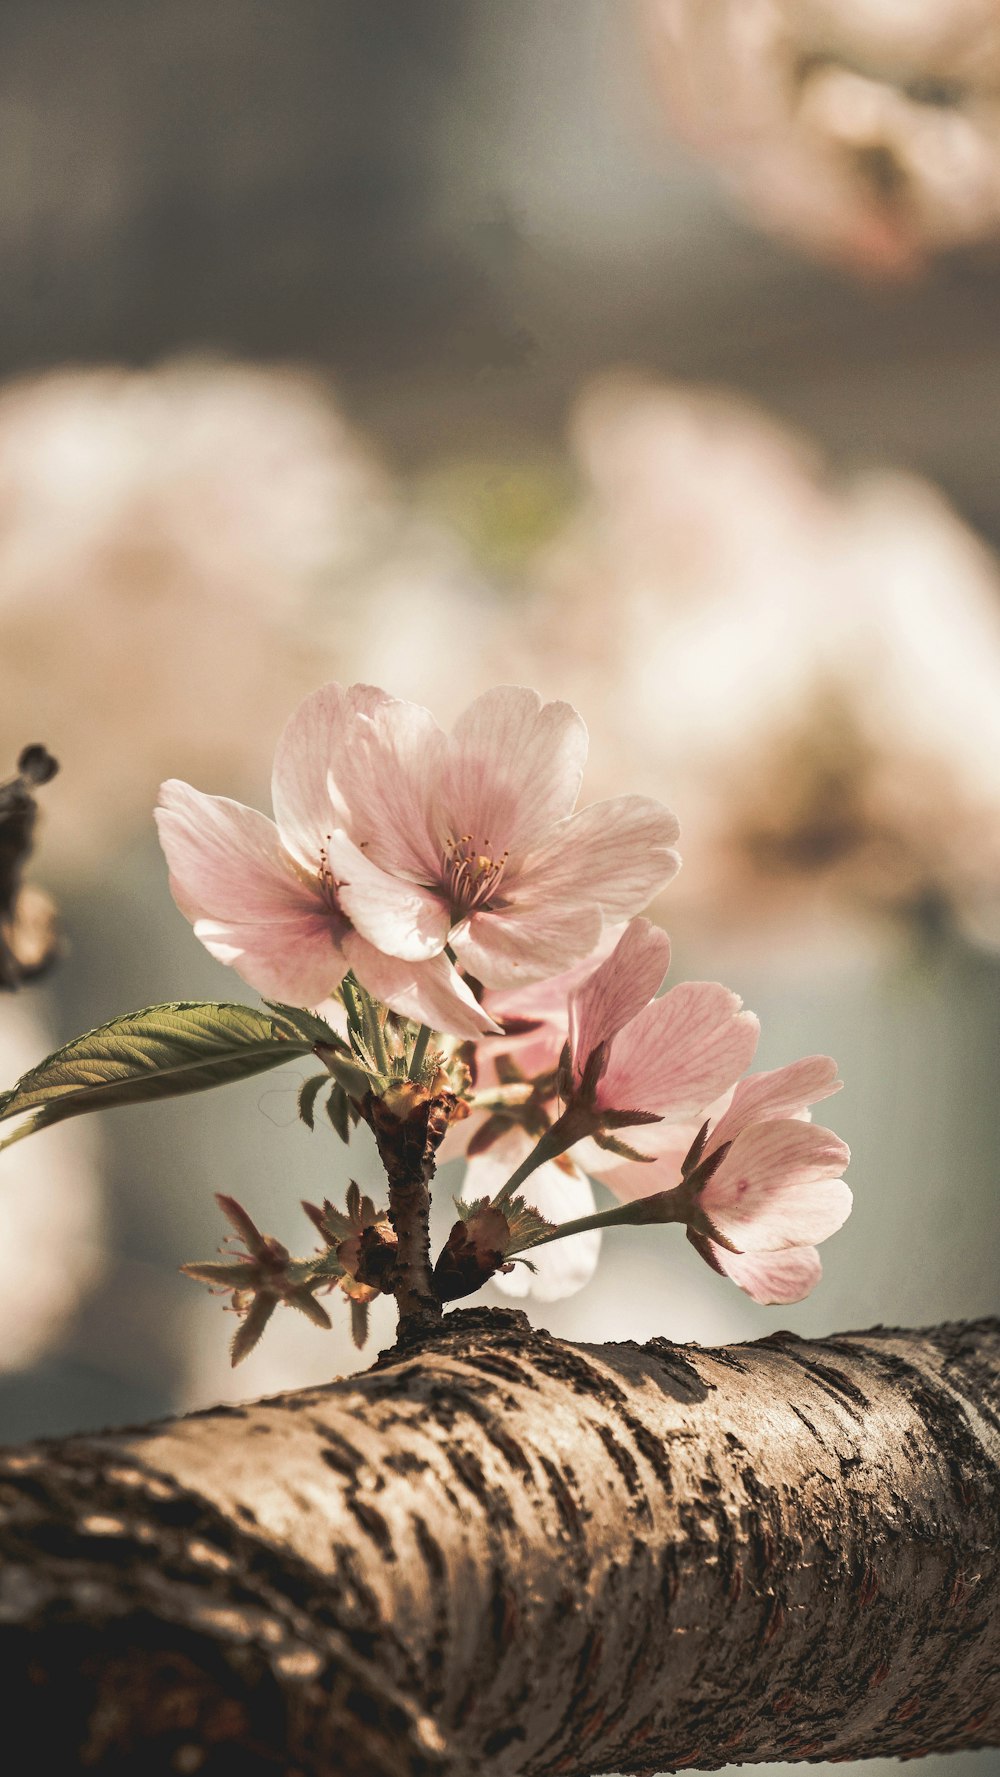 Photographie sélective de la fleur rose épanouie